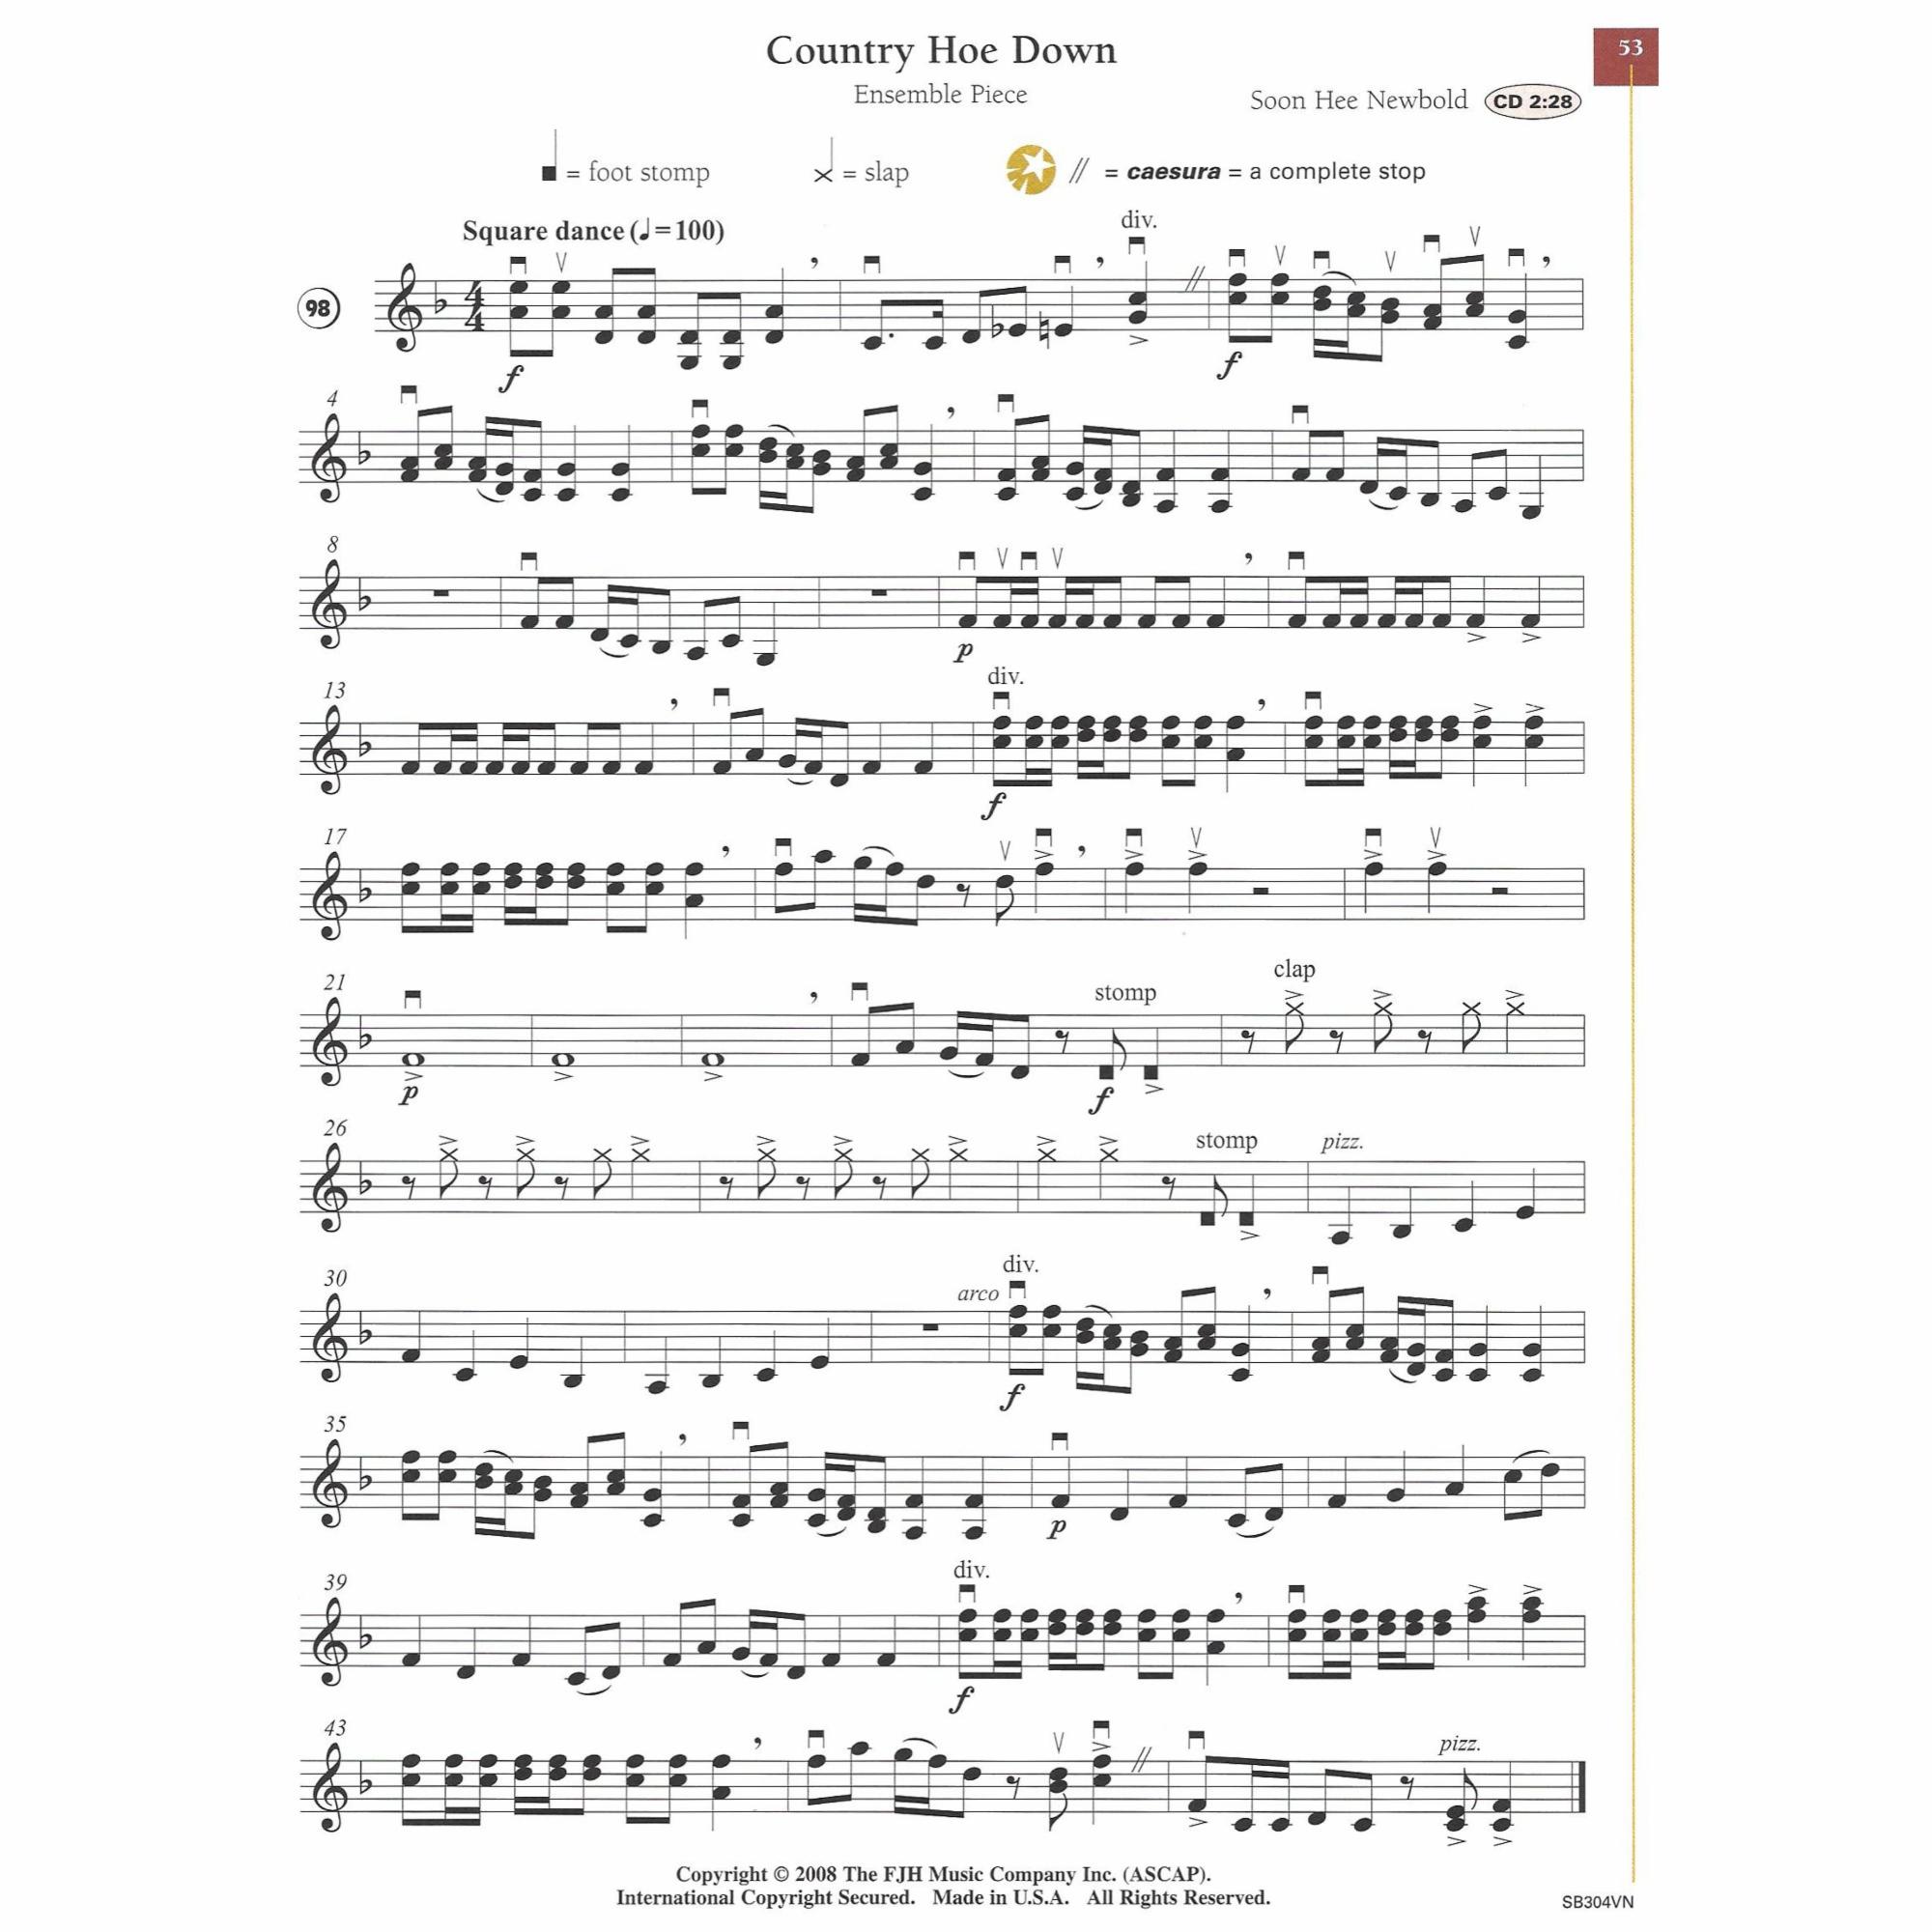 Sample: Violin (Pg. 53)